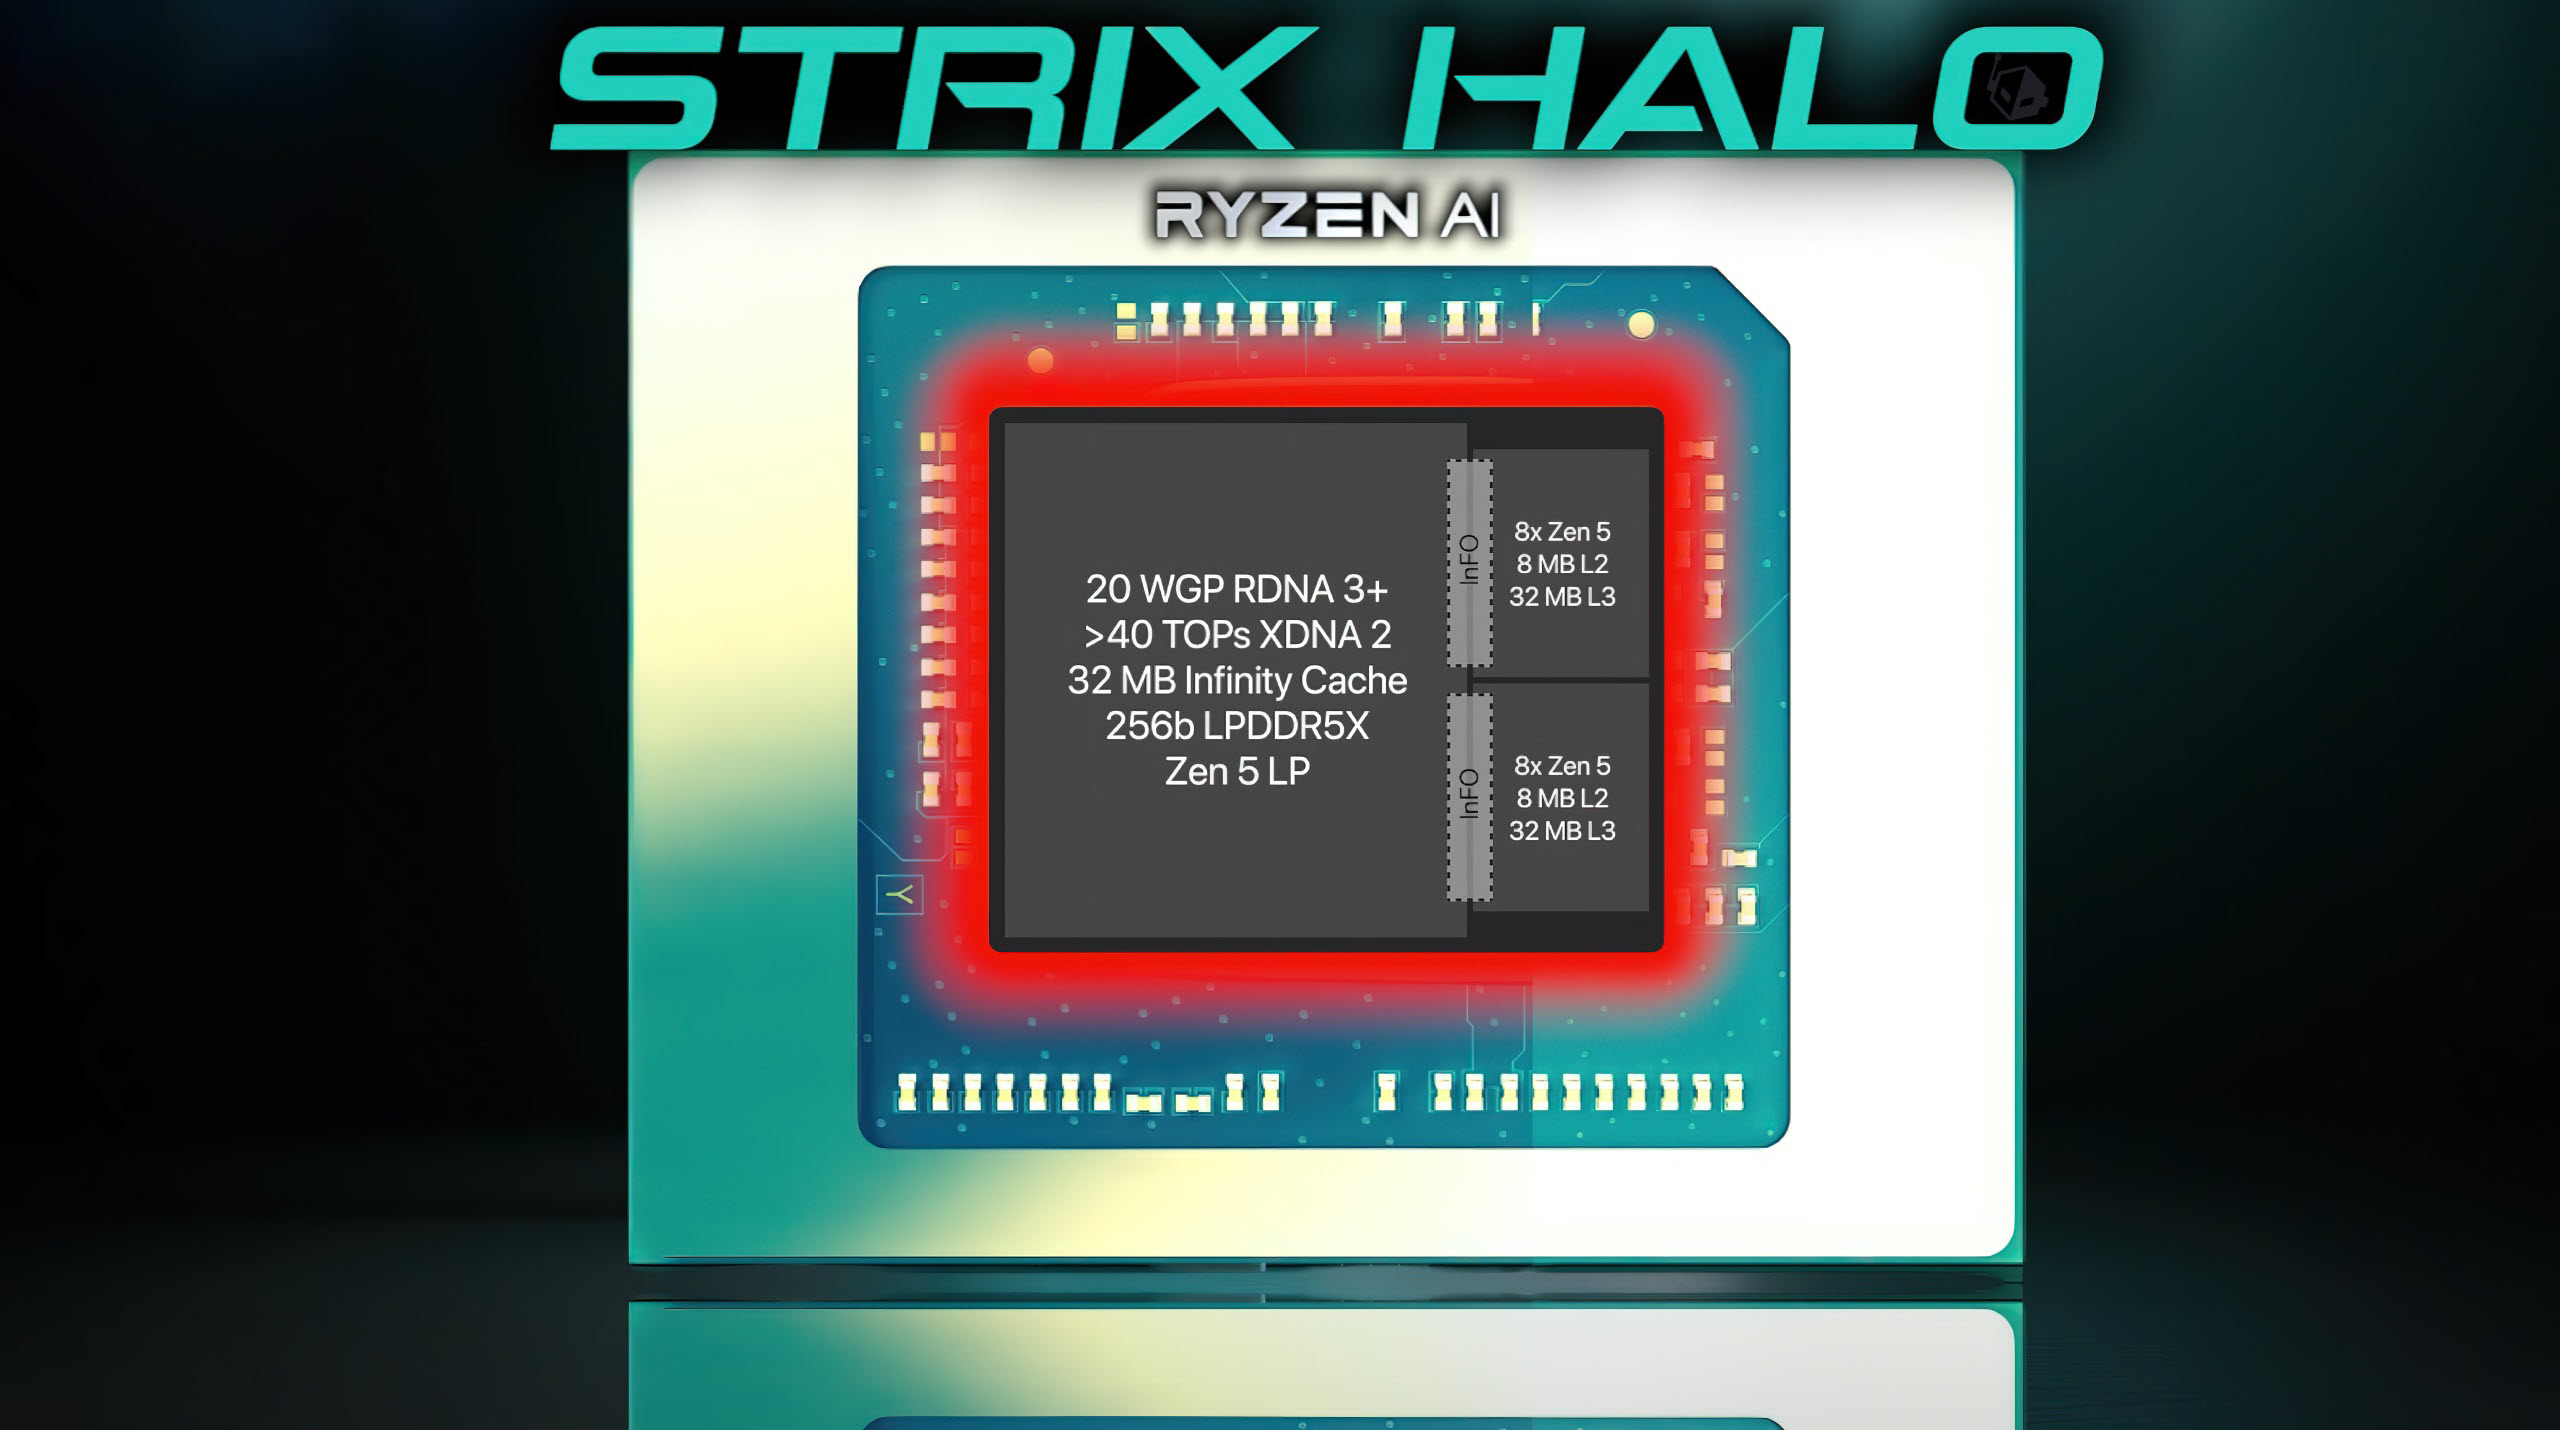 AMD Strix Halo Render, Güçlü Ryzen APU Tasarımını Ortaya Çıkarıyor: 16 Zen 5 Çekirdeği, 40 RDNA 3+ GPU Çekirdeği, 64 MB L3 Önbellek 1